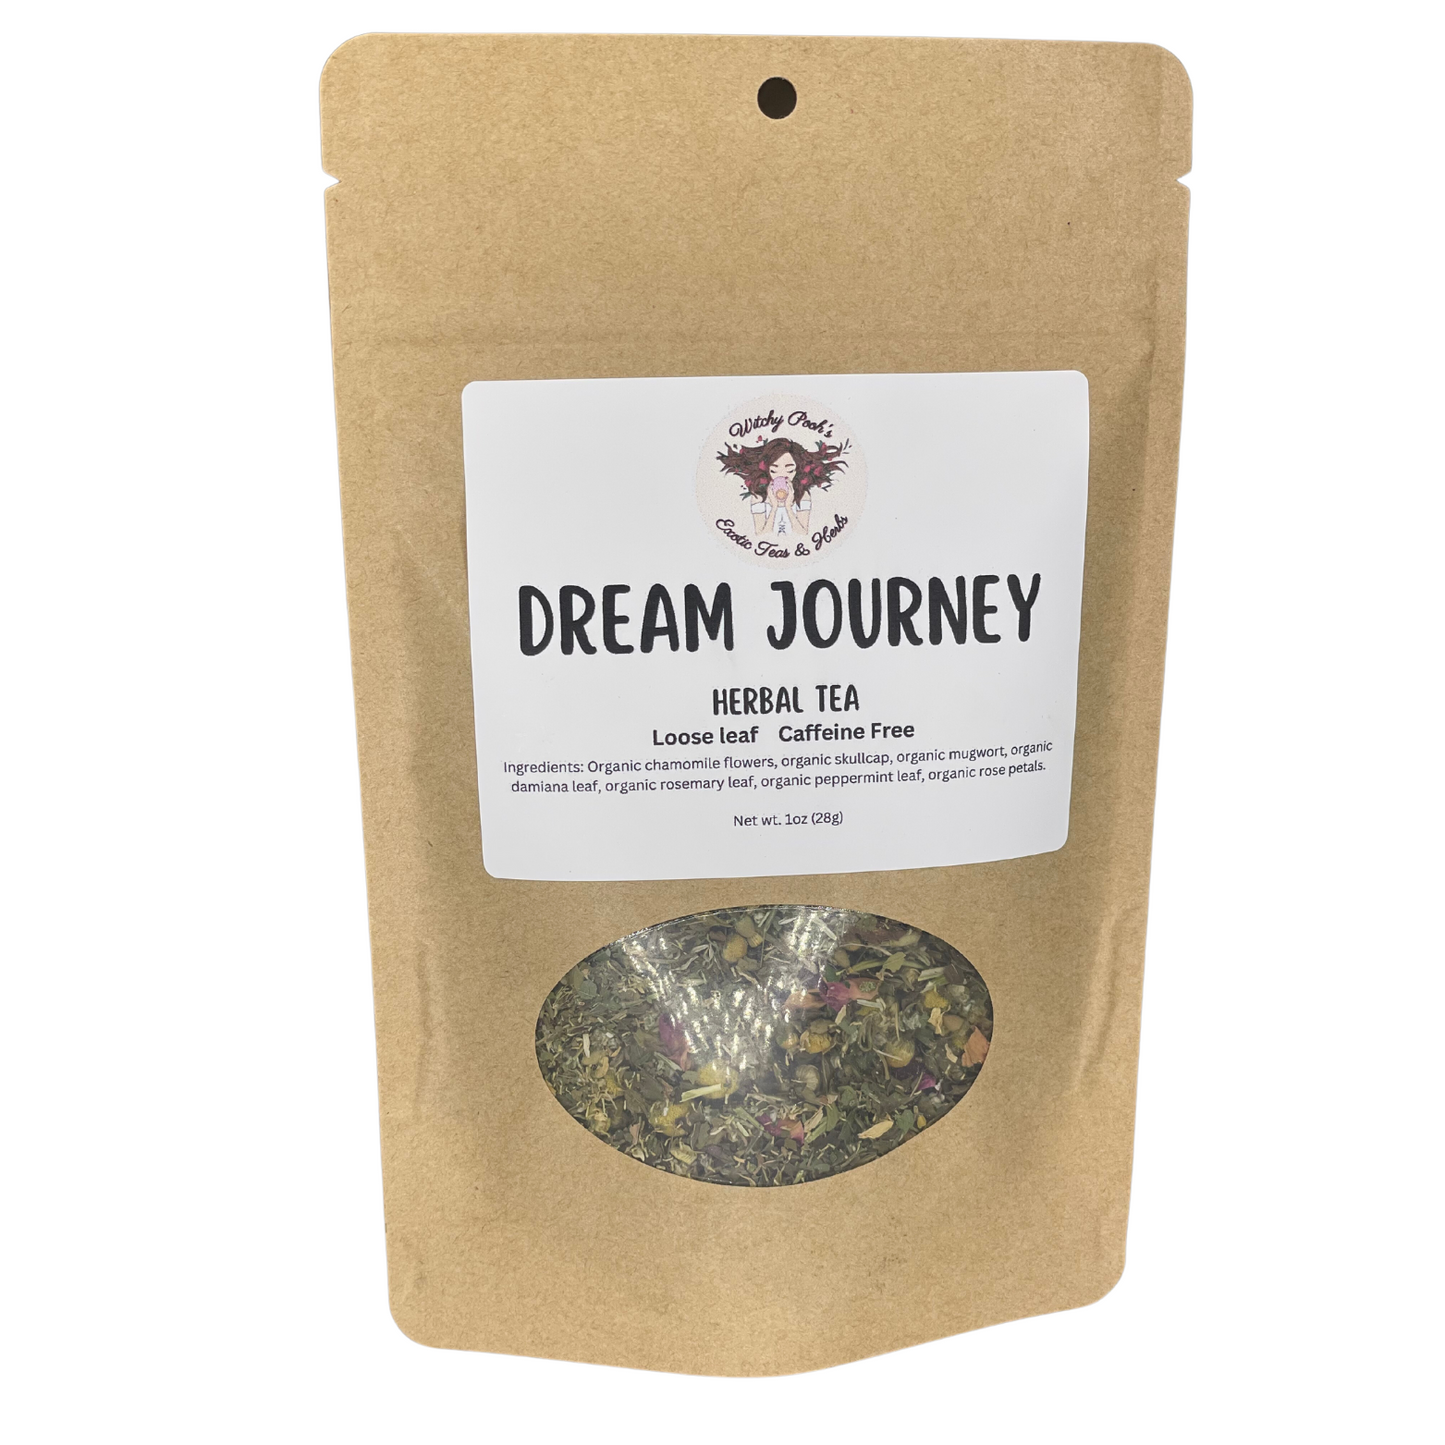 Dream Journey Tea, Loose Leaf Tea, Herbal Tea, Caffeine Free Tea, Organic Tea, Functional Tea-0